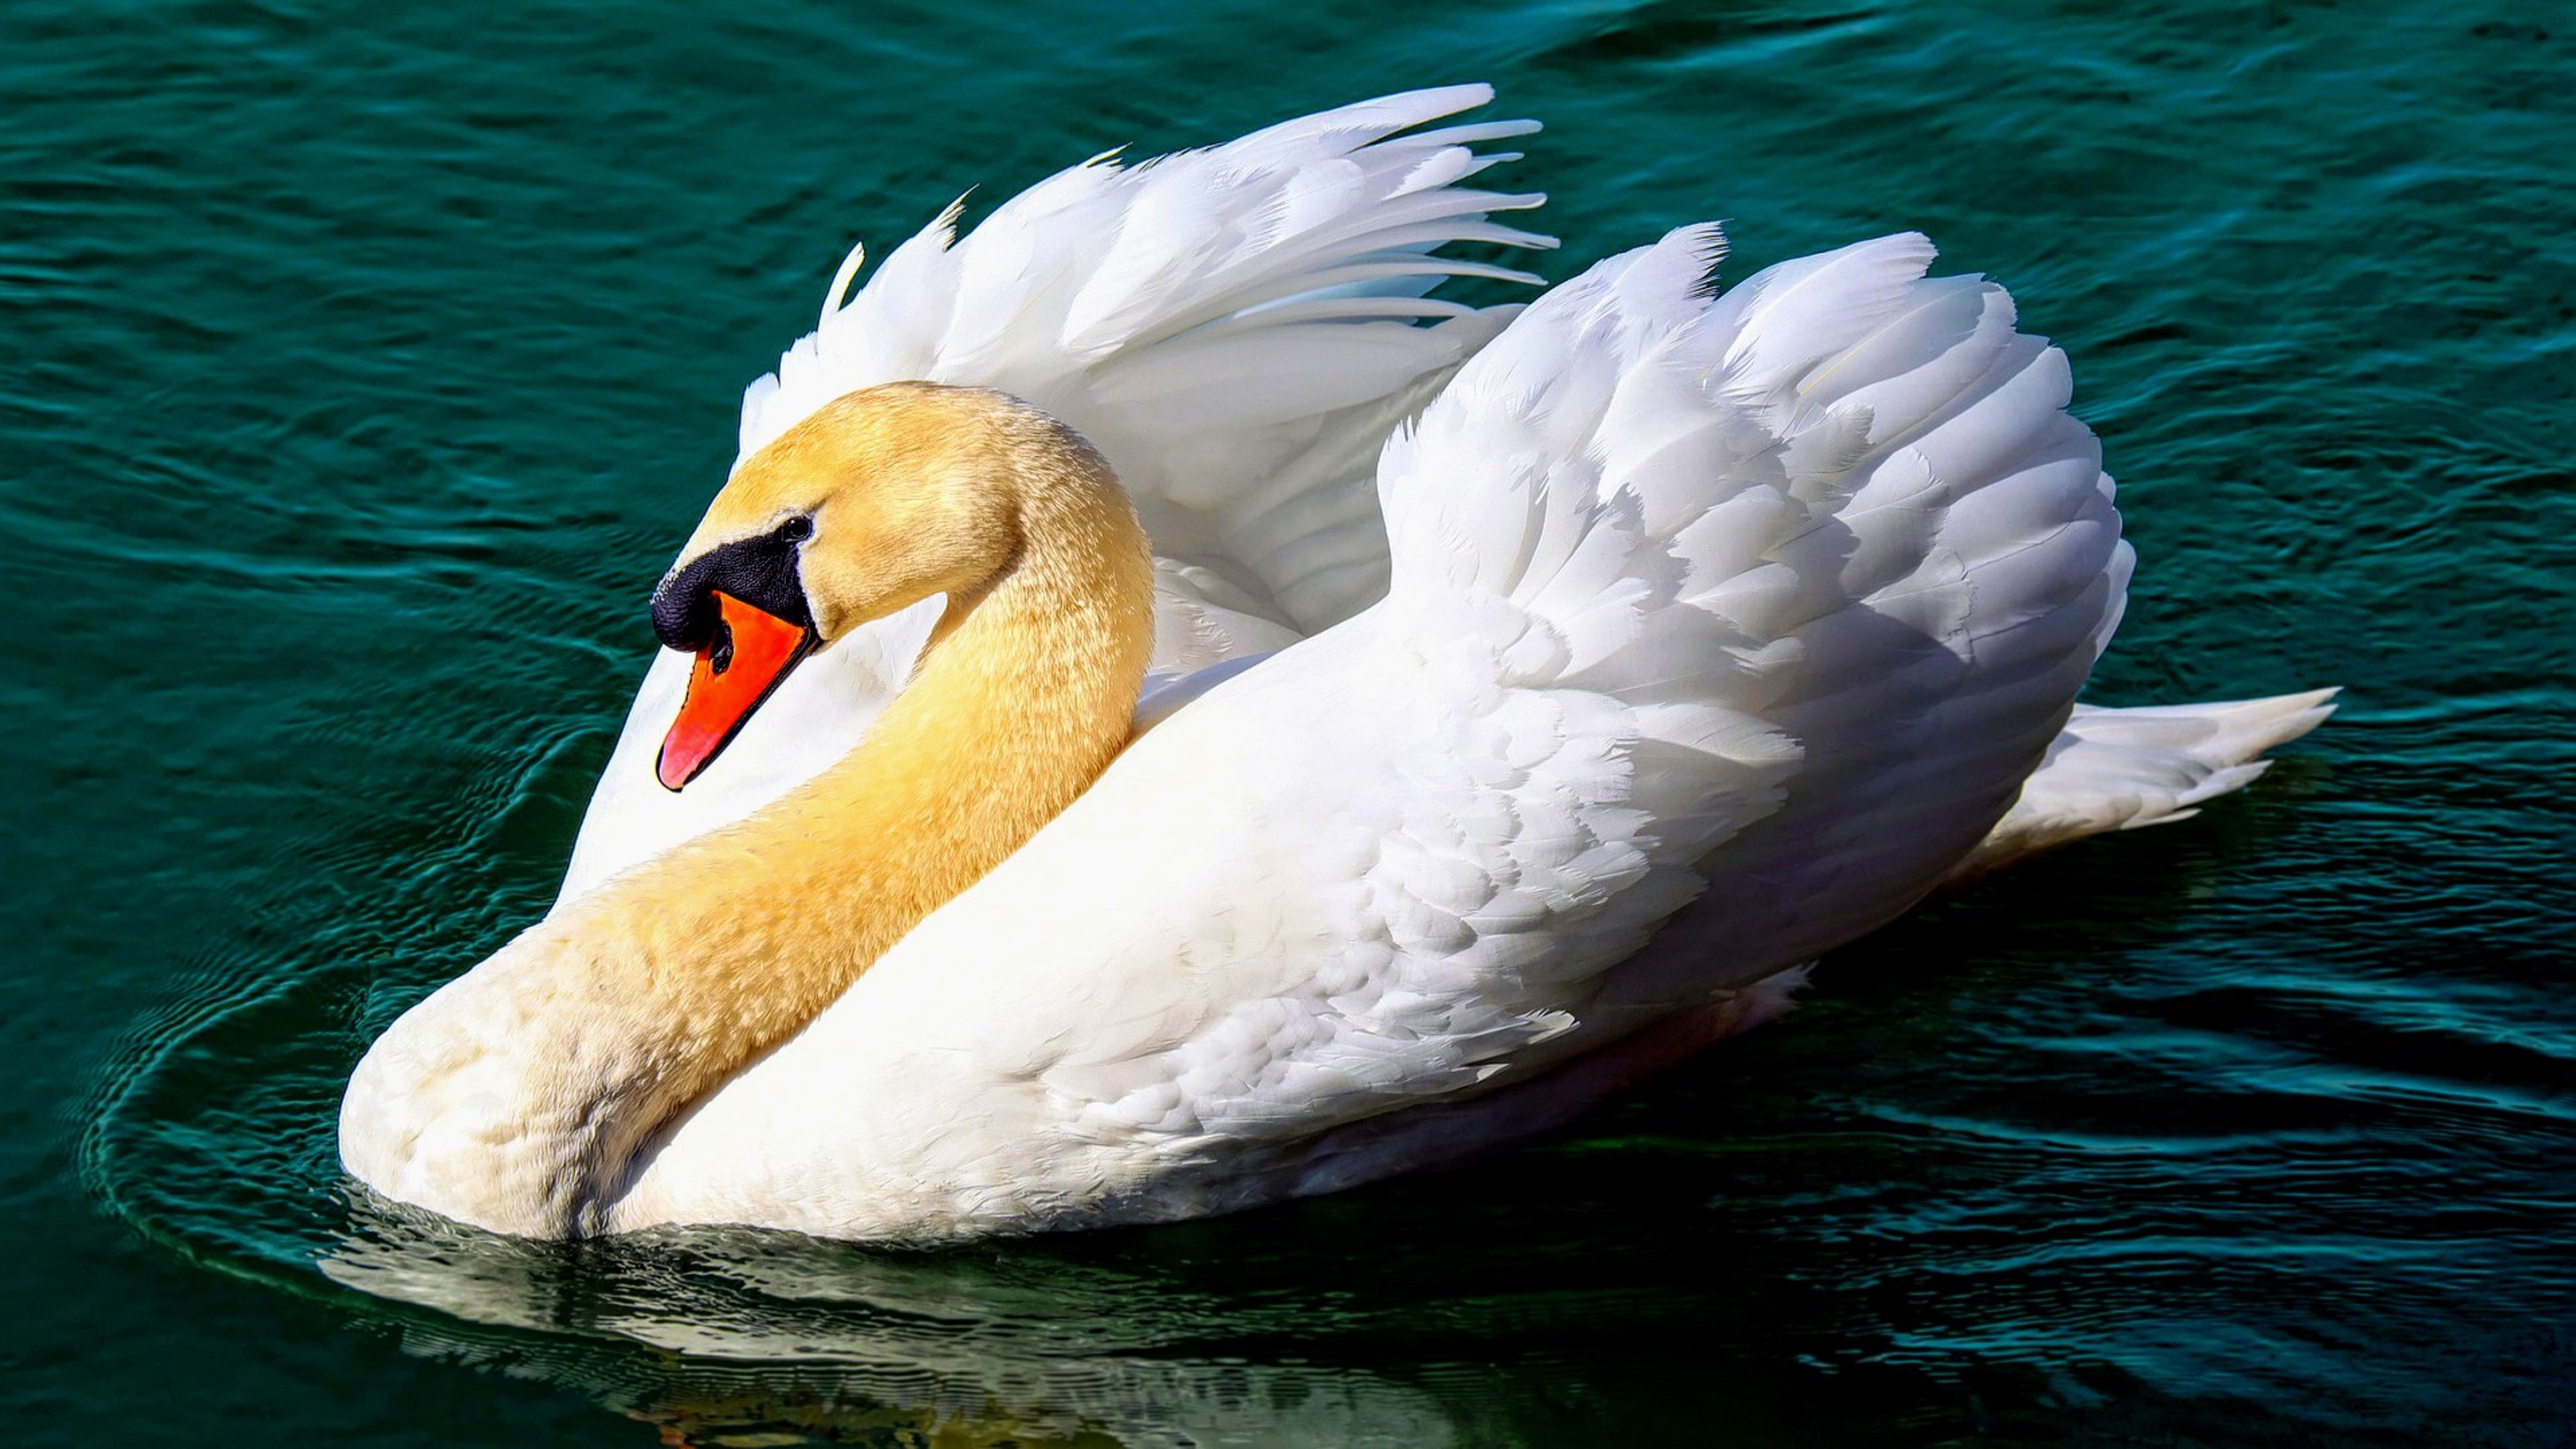 A wondrous swan, Wondrous swan wondrous, Swan wondrous swan, Wondrous swan, 3840x2160 4K Desktop